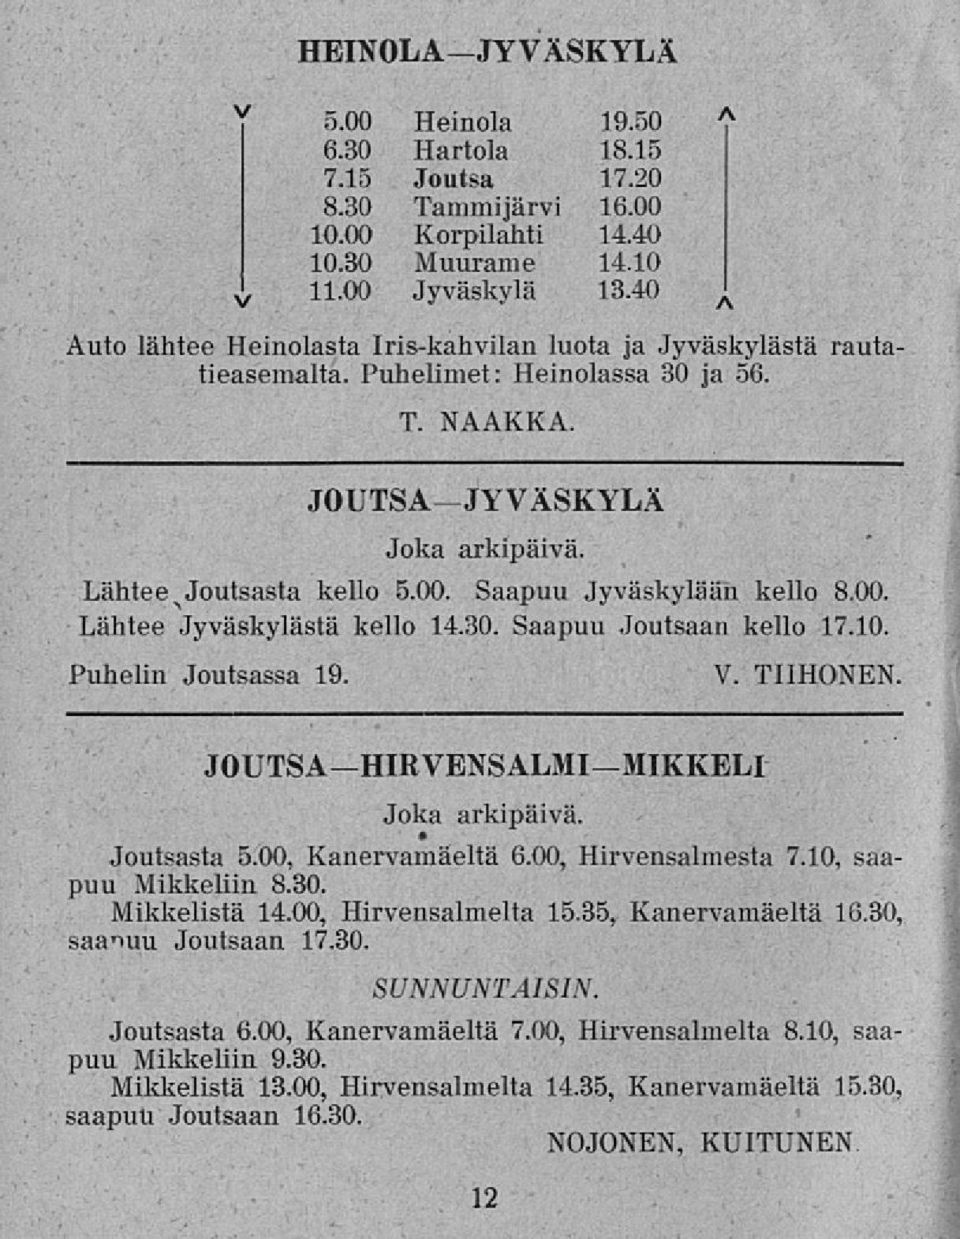 Saapuu Jyväskylään kello 8.00. Lähtee Jyväskylästä kello 14.30. Saapuu Joutsaan kello 17.10. Puhelin Joutsassa 19. V. TIIHONEN JOUTSAHIRVENSALMIMIKKELI Joka arkipäivä. Joutsasta 5.00, Kanervamäeltä 6.